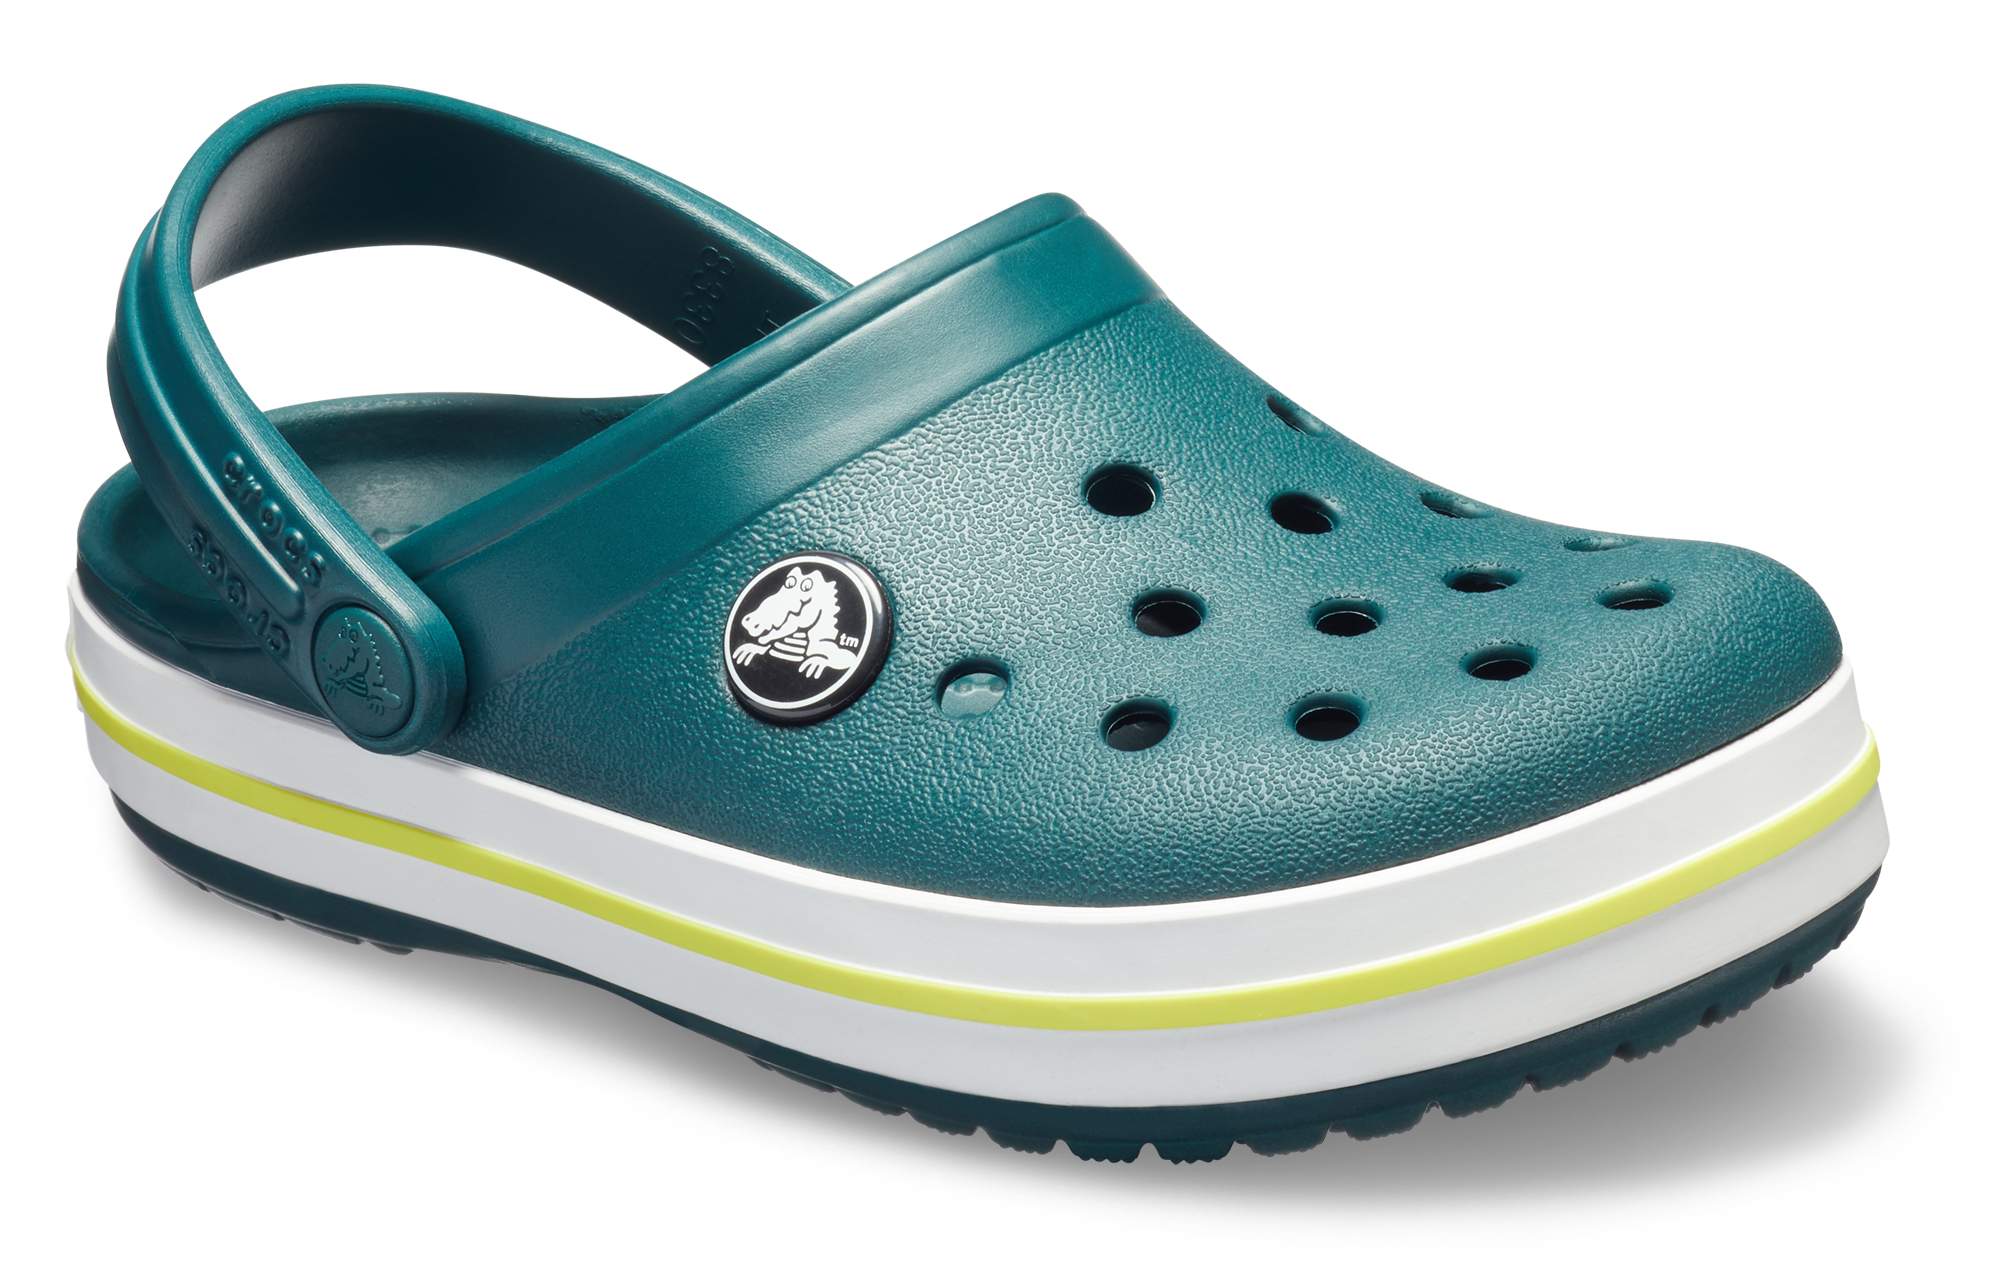 Crocs™ Europe | Crocs Shoes, Sandals & Clogs | Crocs.eu